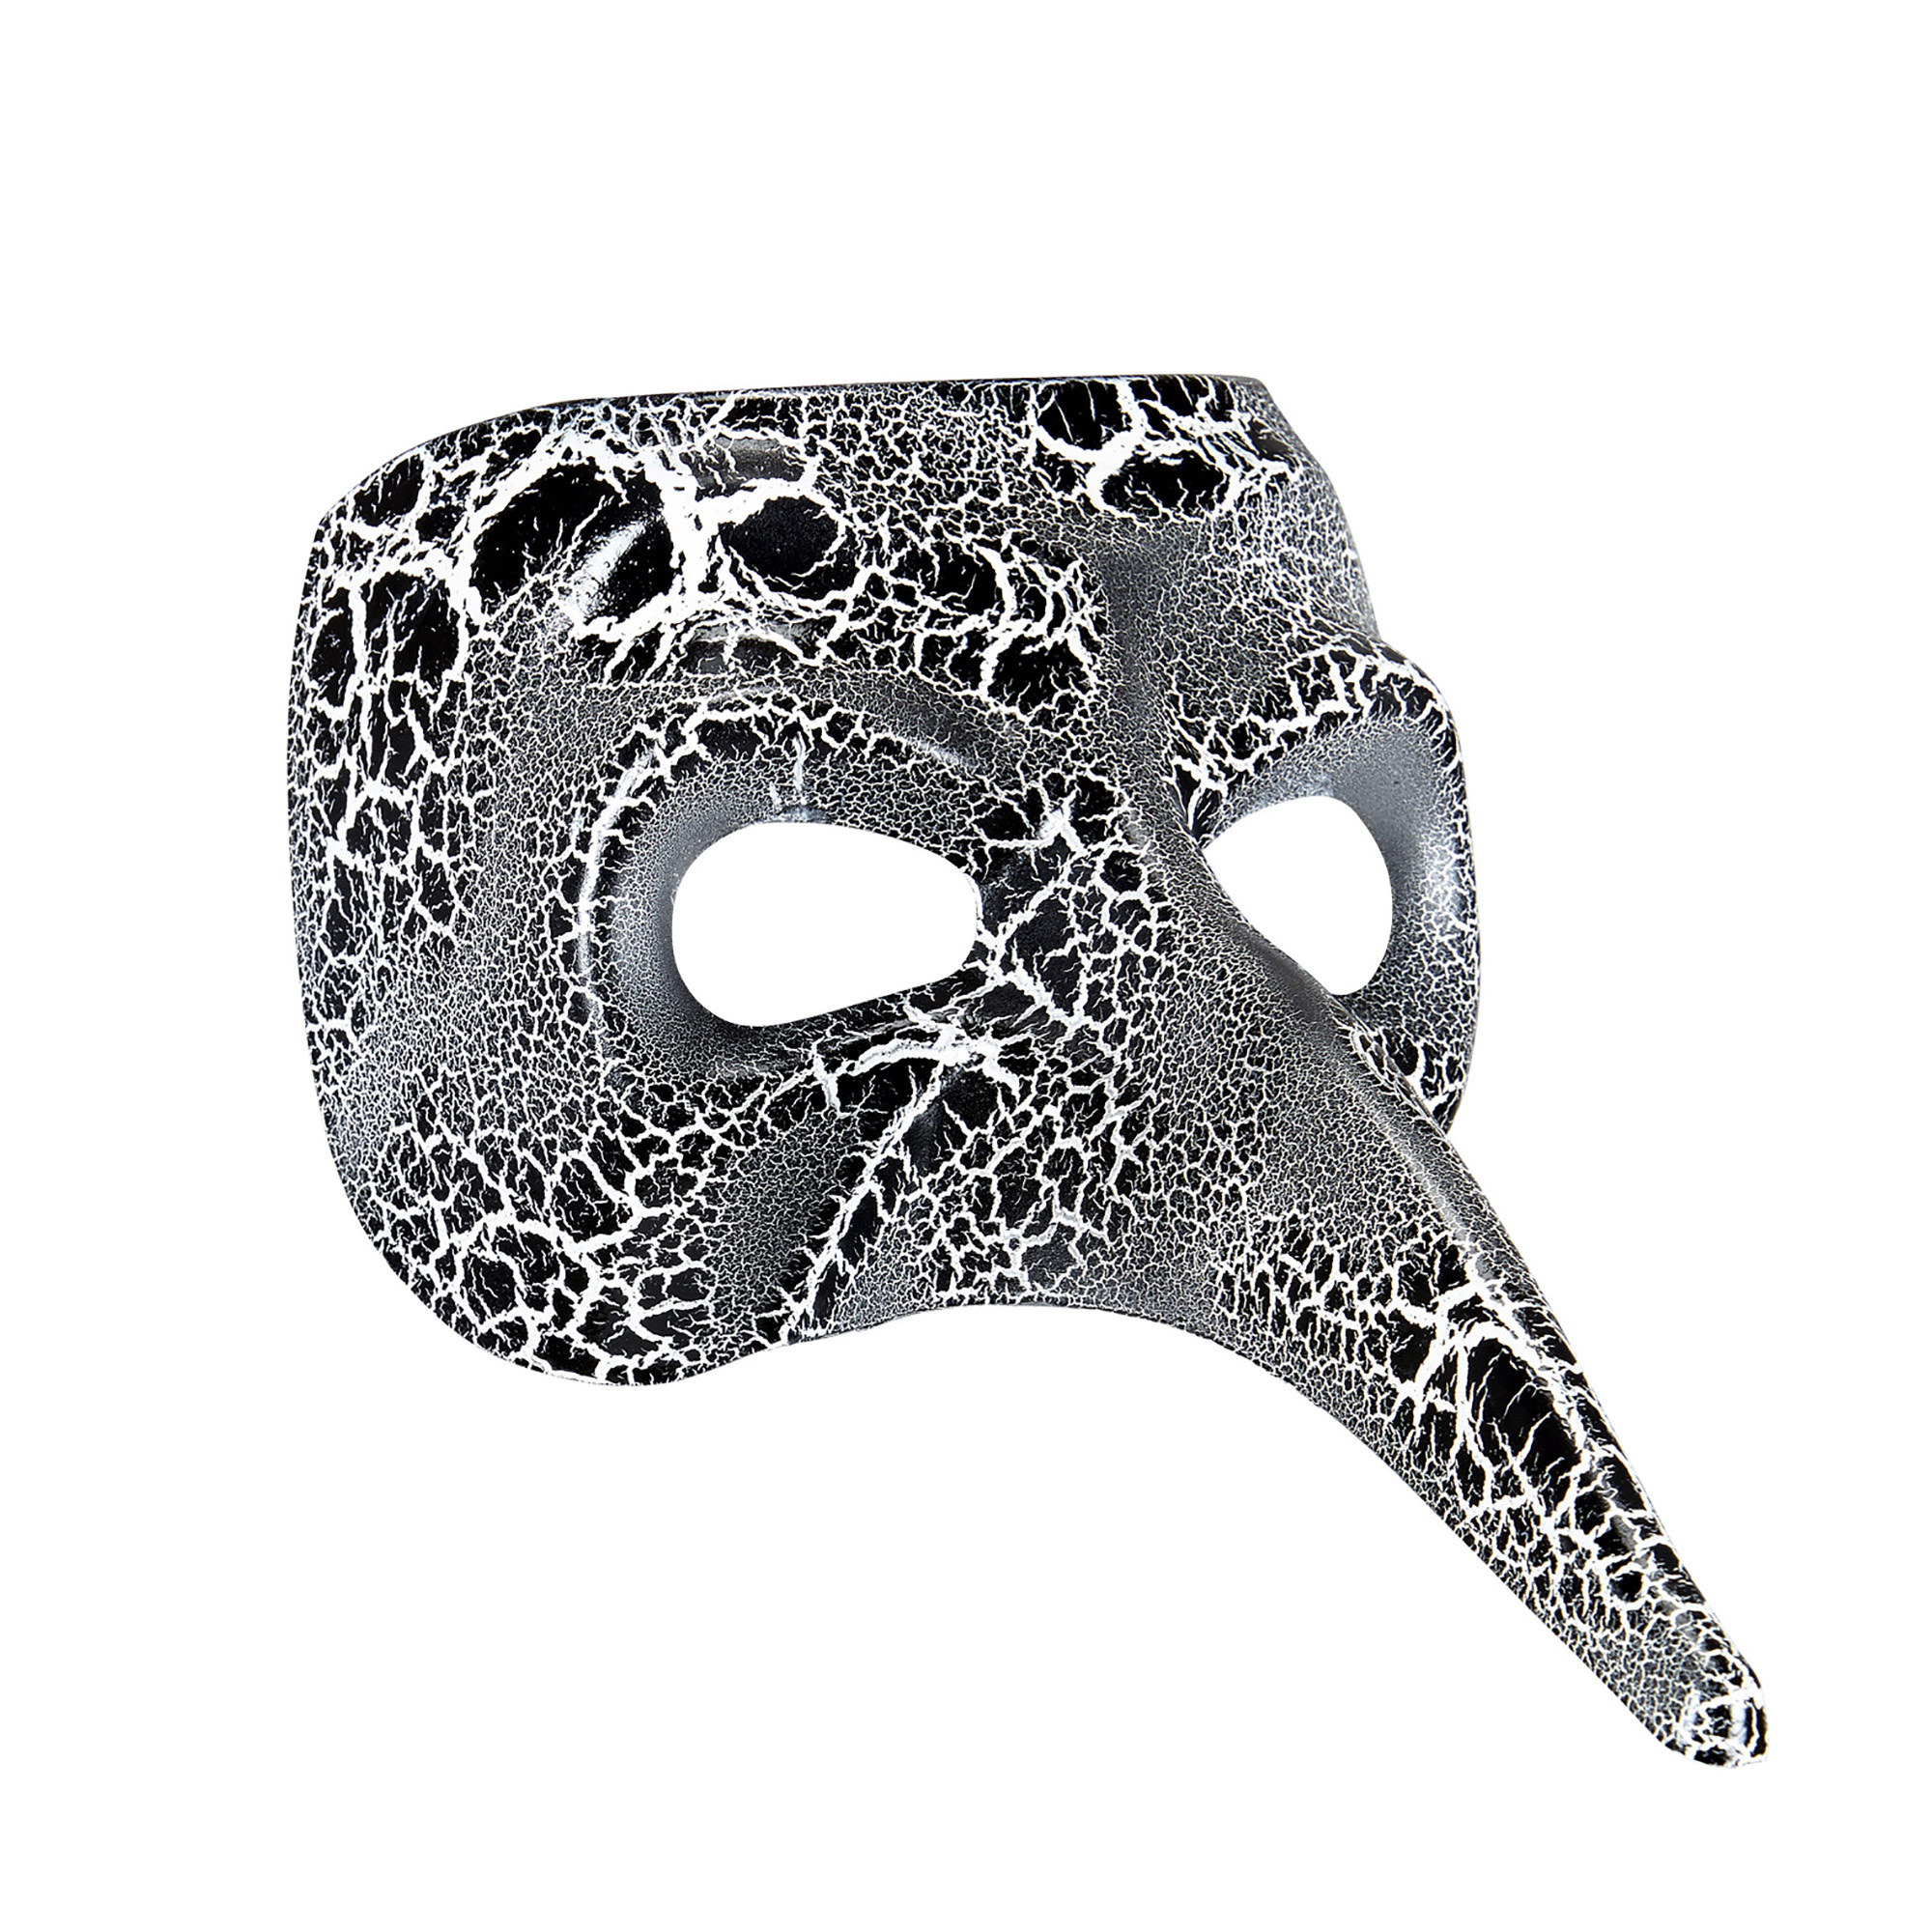 venetiaans masker met lange neus zwart wit